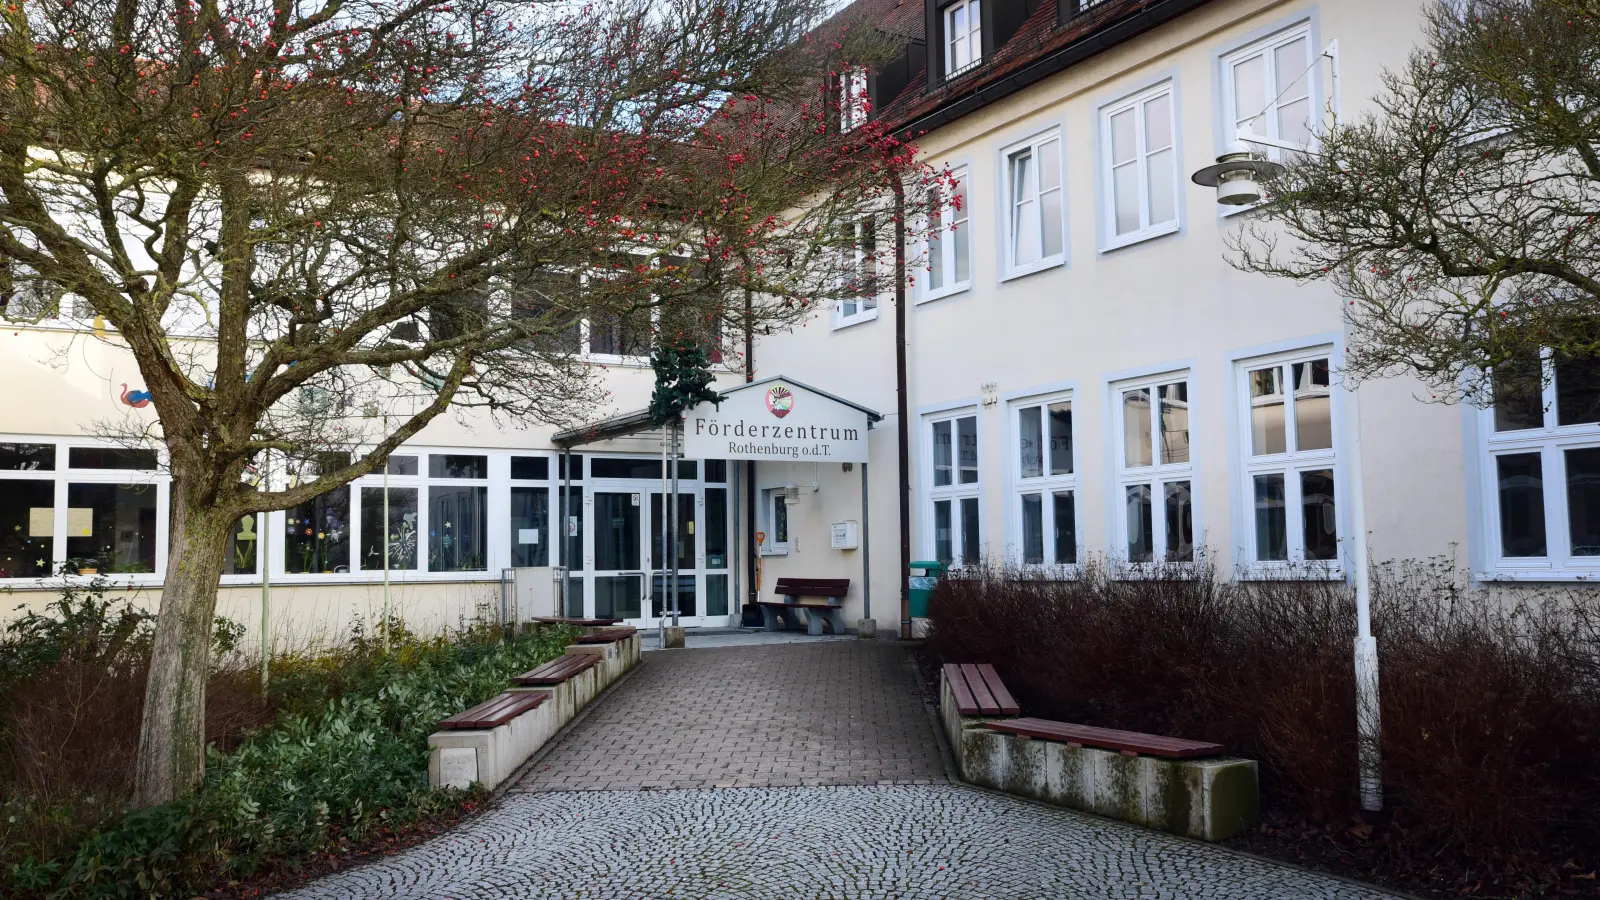 Das Förderzentrum in Rothenburg soll durch verschiedene Maßnahmen attraktiver werden, damit sich wieder mehr Eltern dafür entscheiden, ihre Kinder dort unterrichten zu lassen. (Foto: Irmeli Pohl)